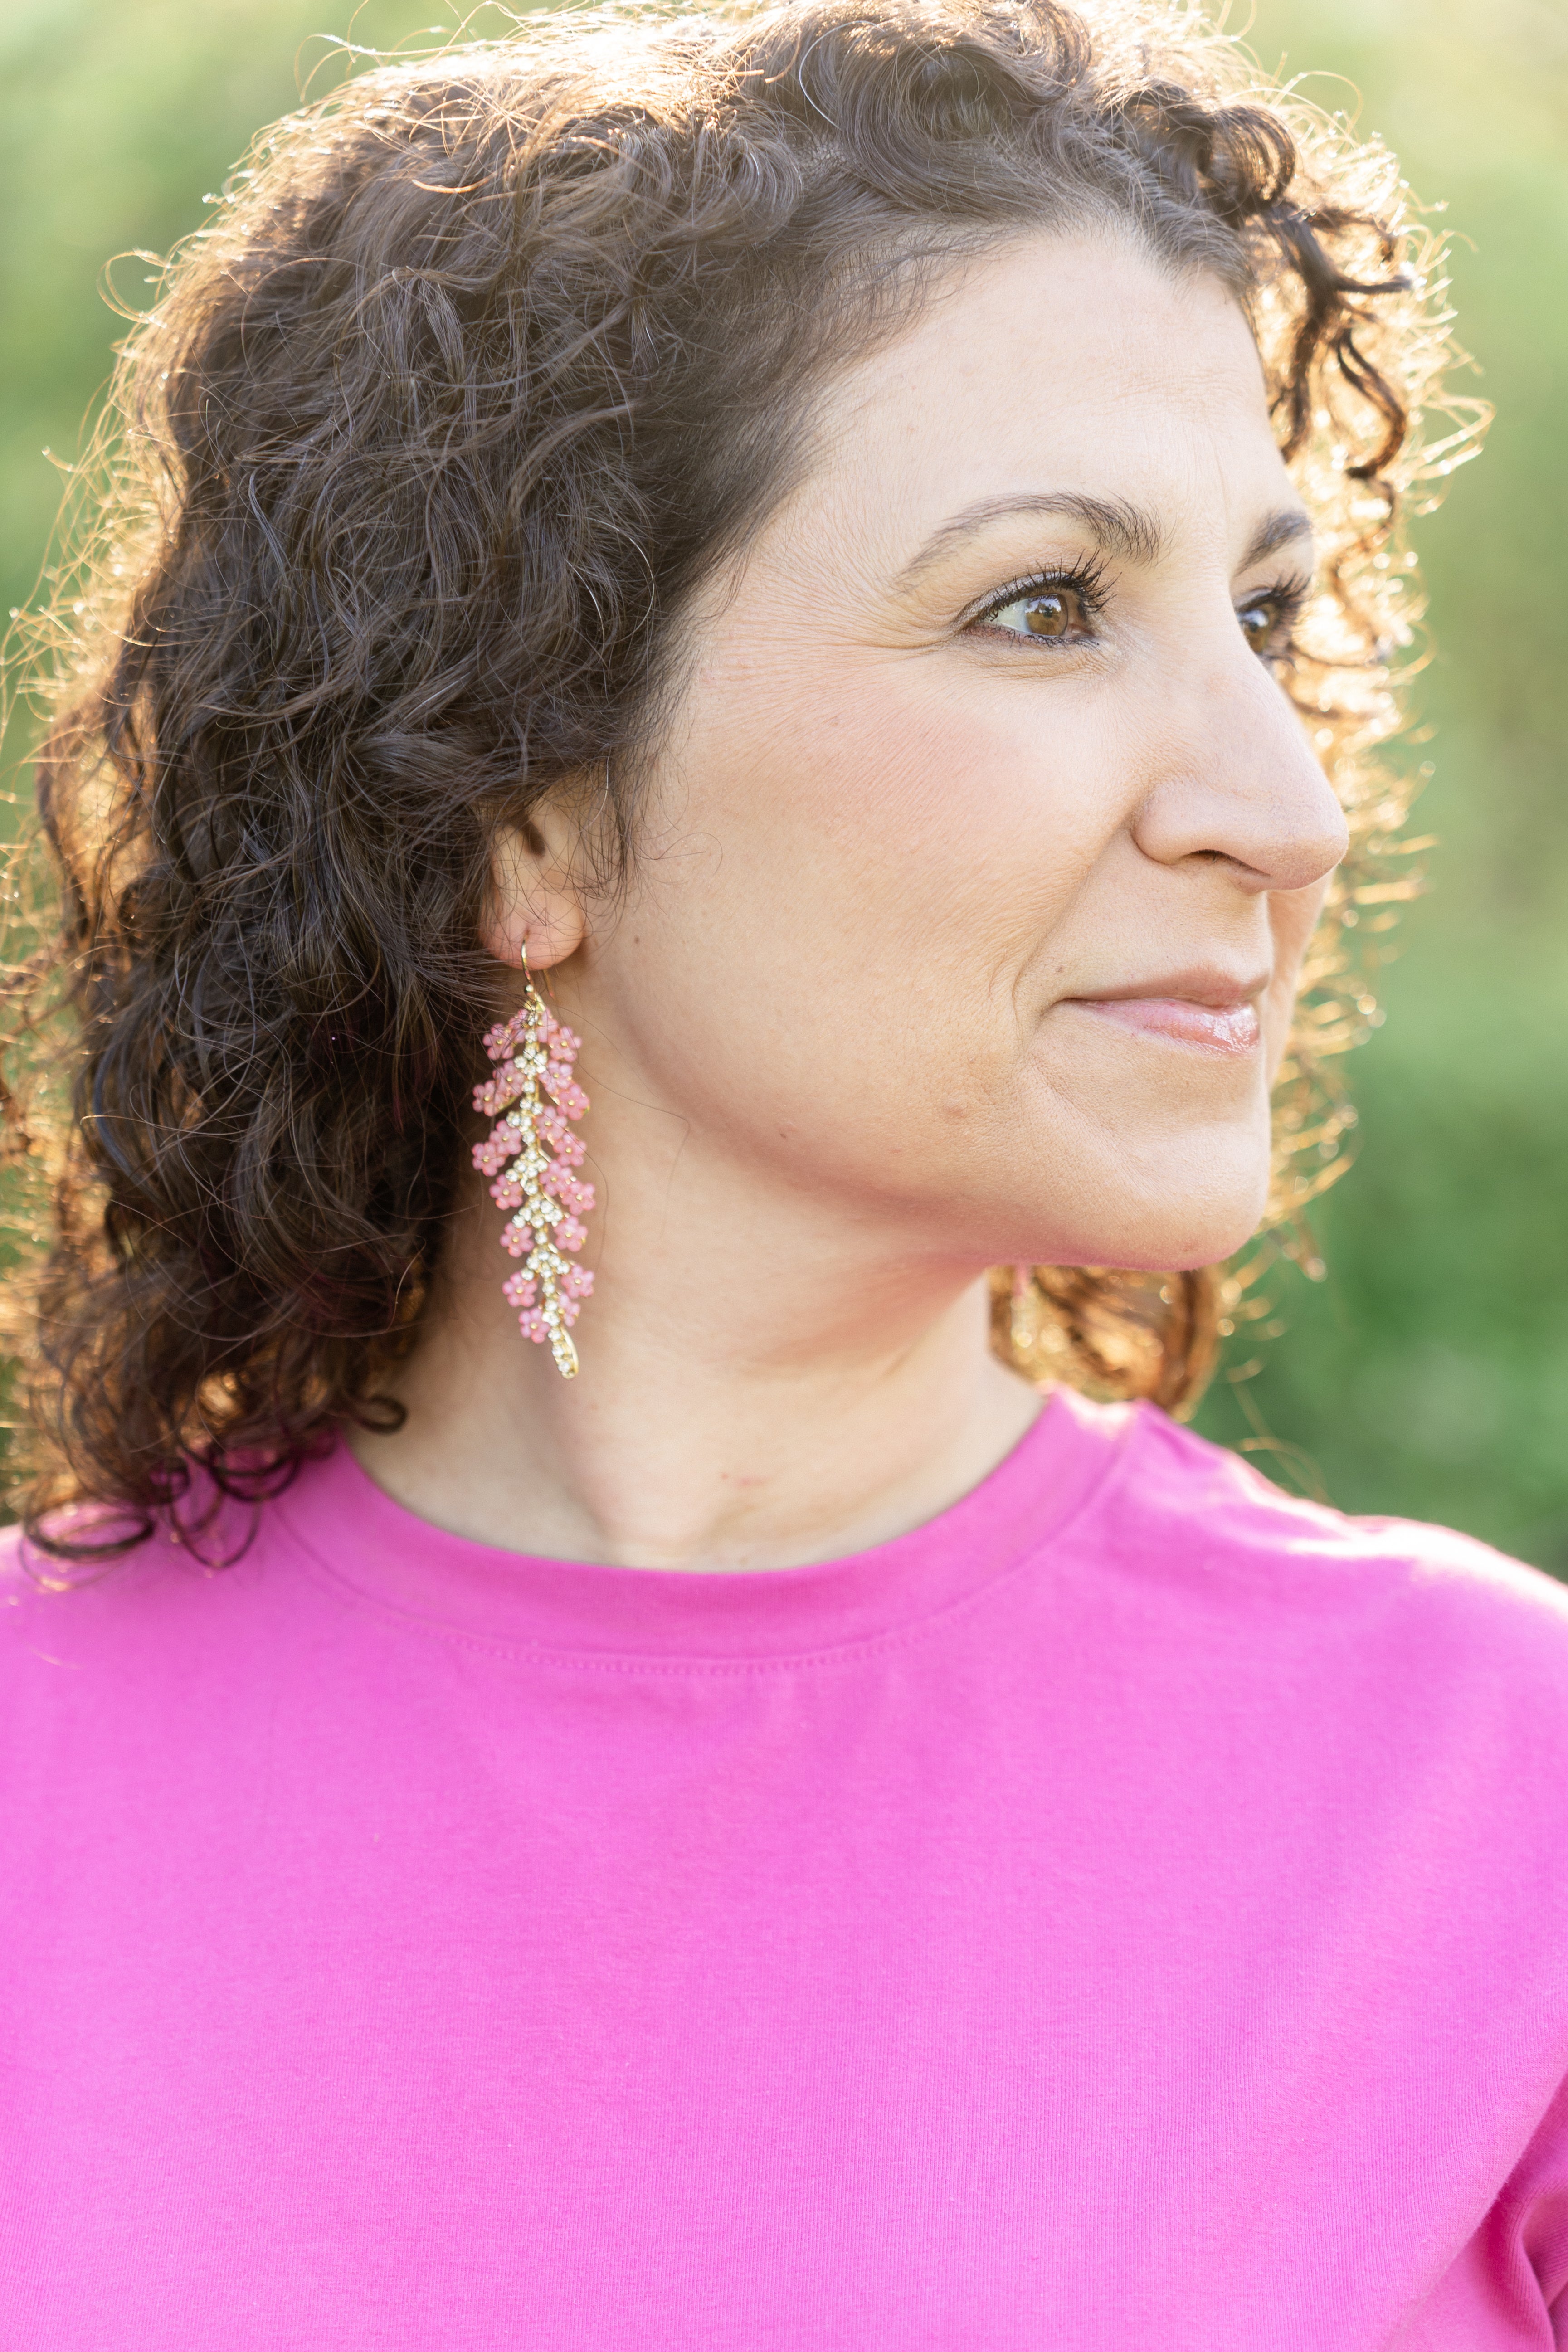 pink flower drop earrings modeled on woman